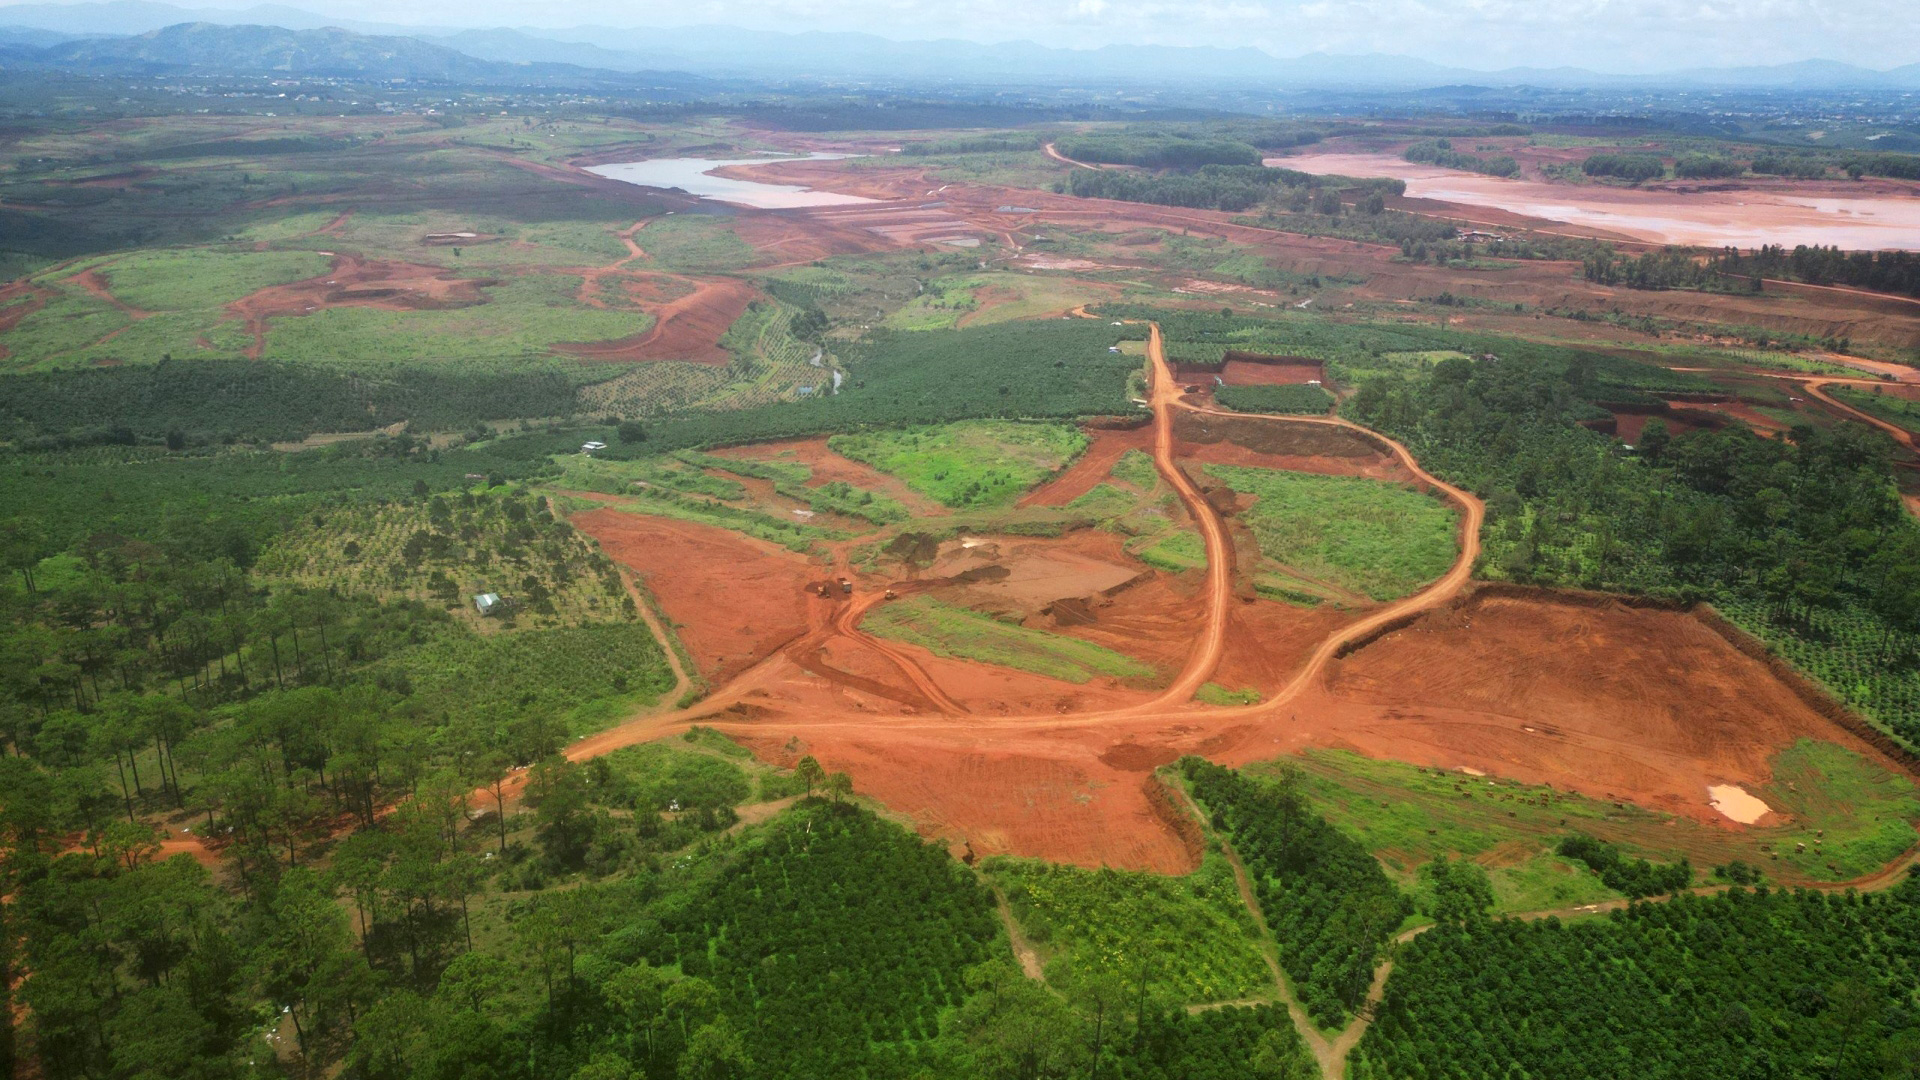 UBND huyện Bảo Lâm đã ban hành các quyết định thu hồi đất của 2 công ty Vĩnh Tiến và Vĩnh Lộc, với diện tích 15,7 ha để phục vụ khai thác bô xít